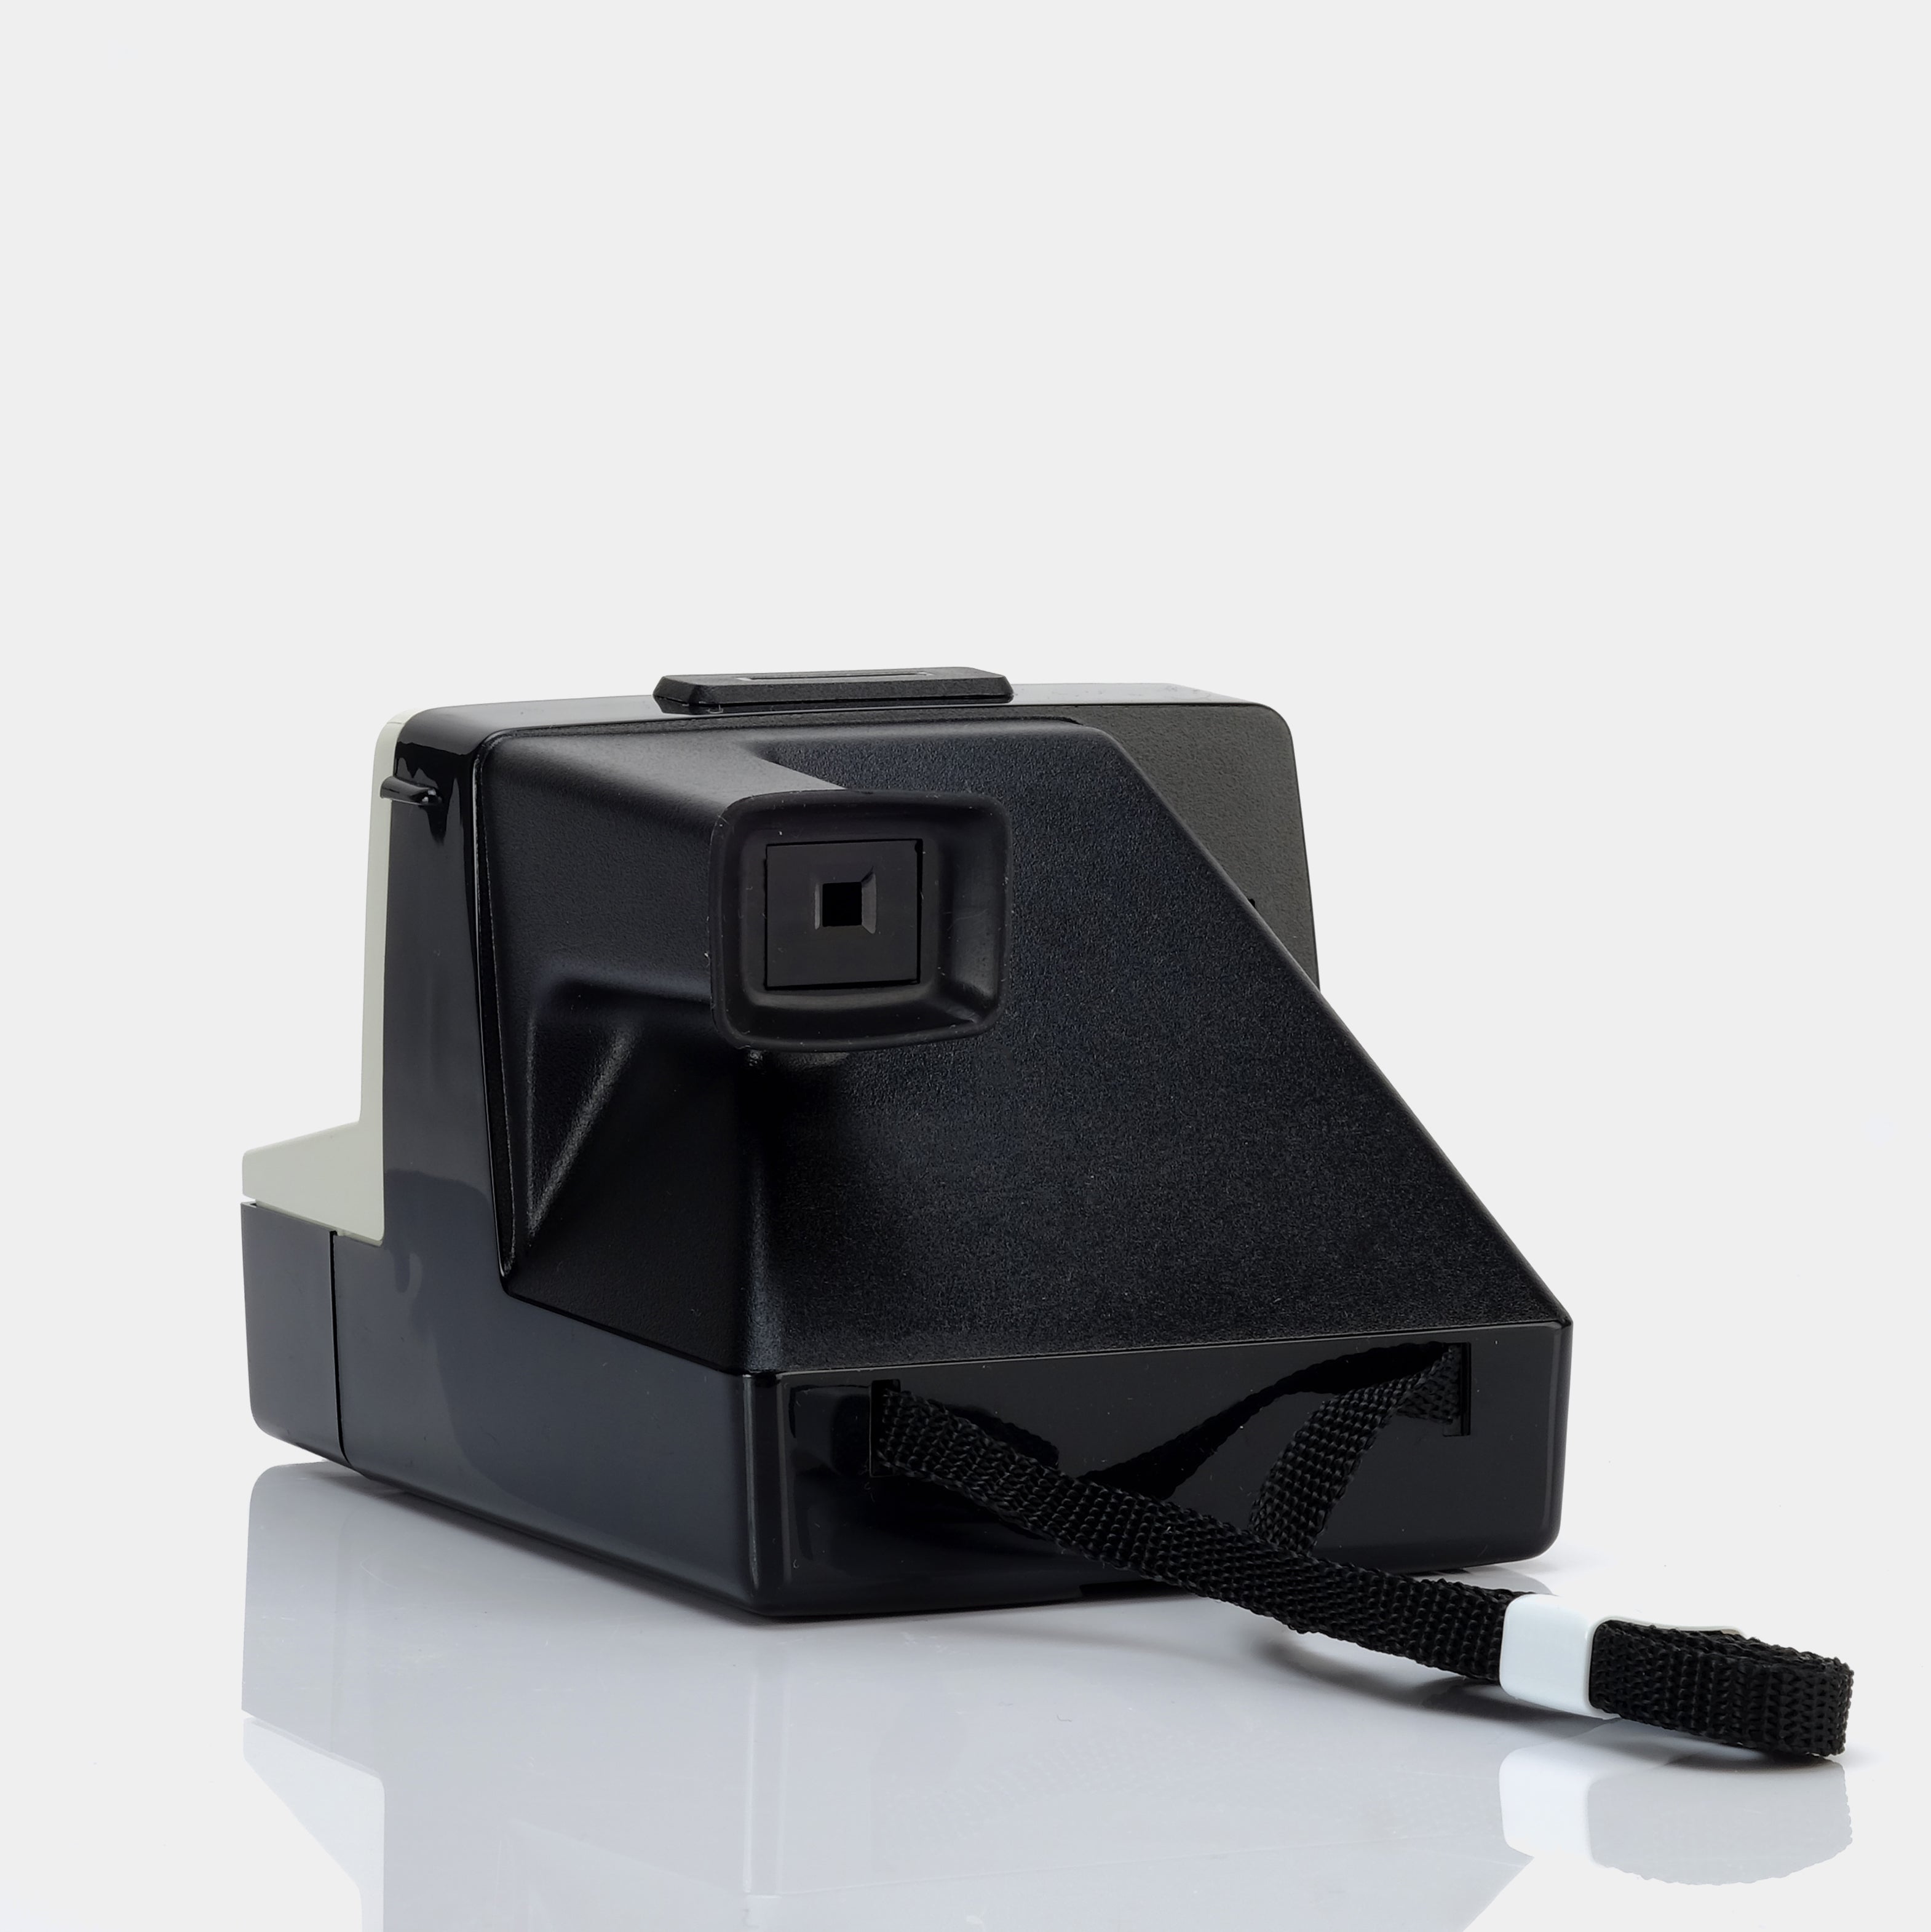 Polaroid SX-70 1000 Instant Film Camera